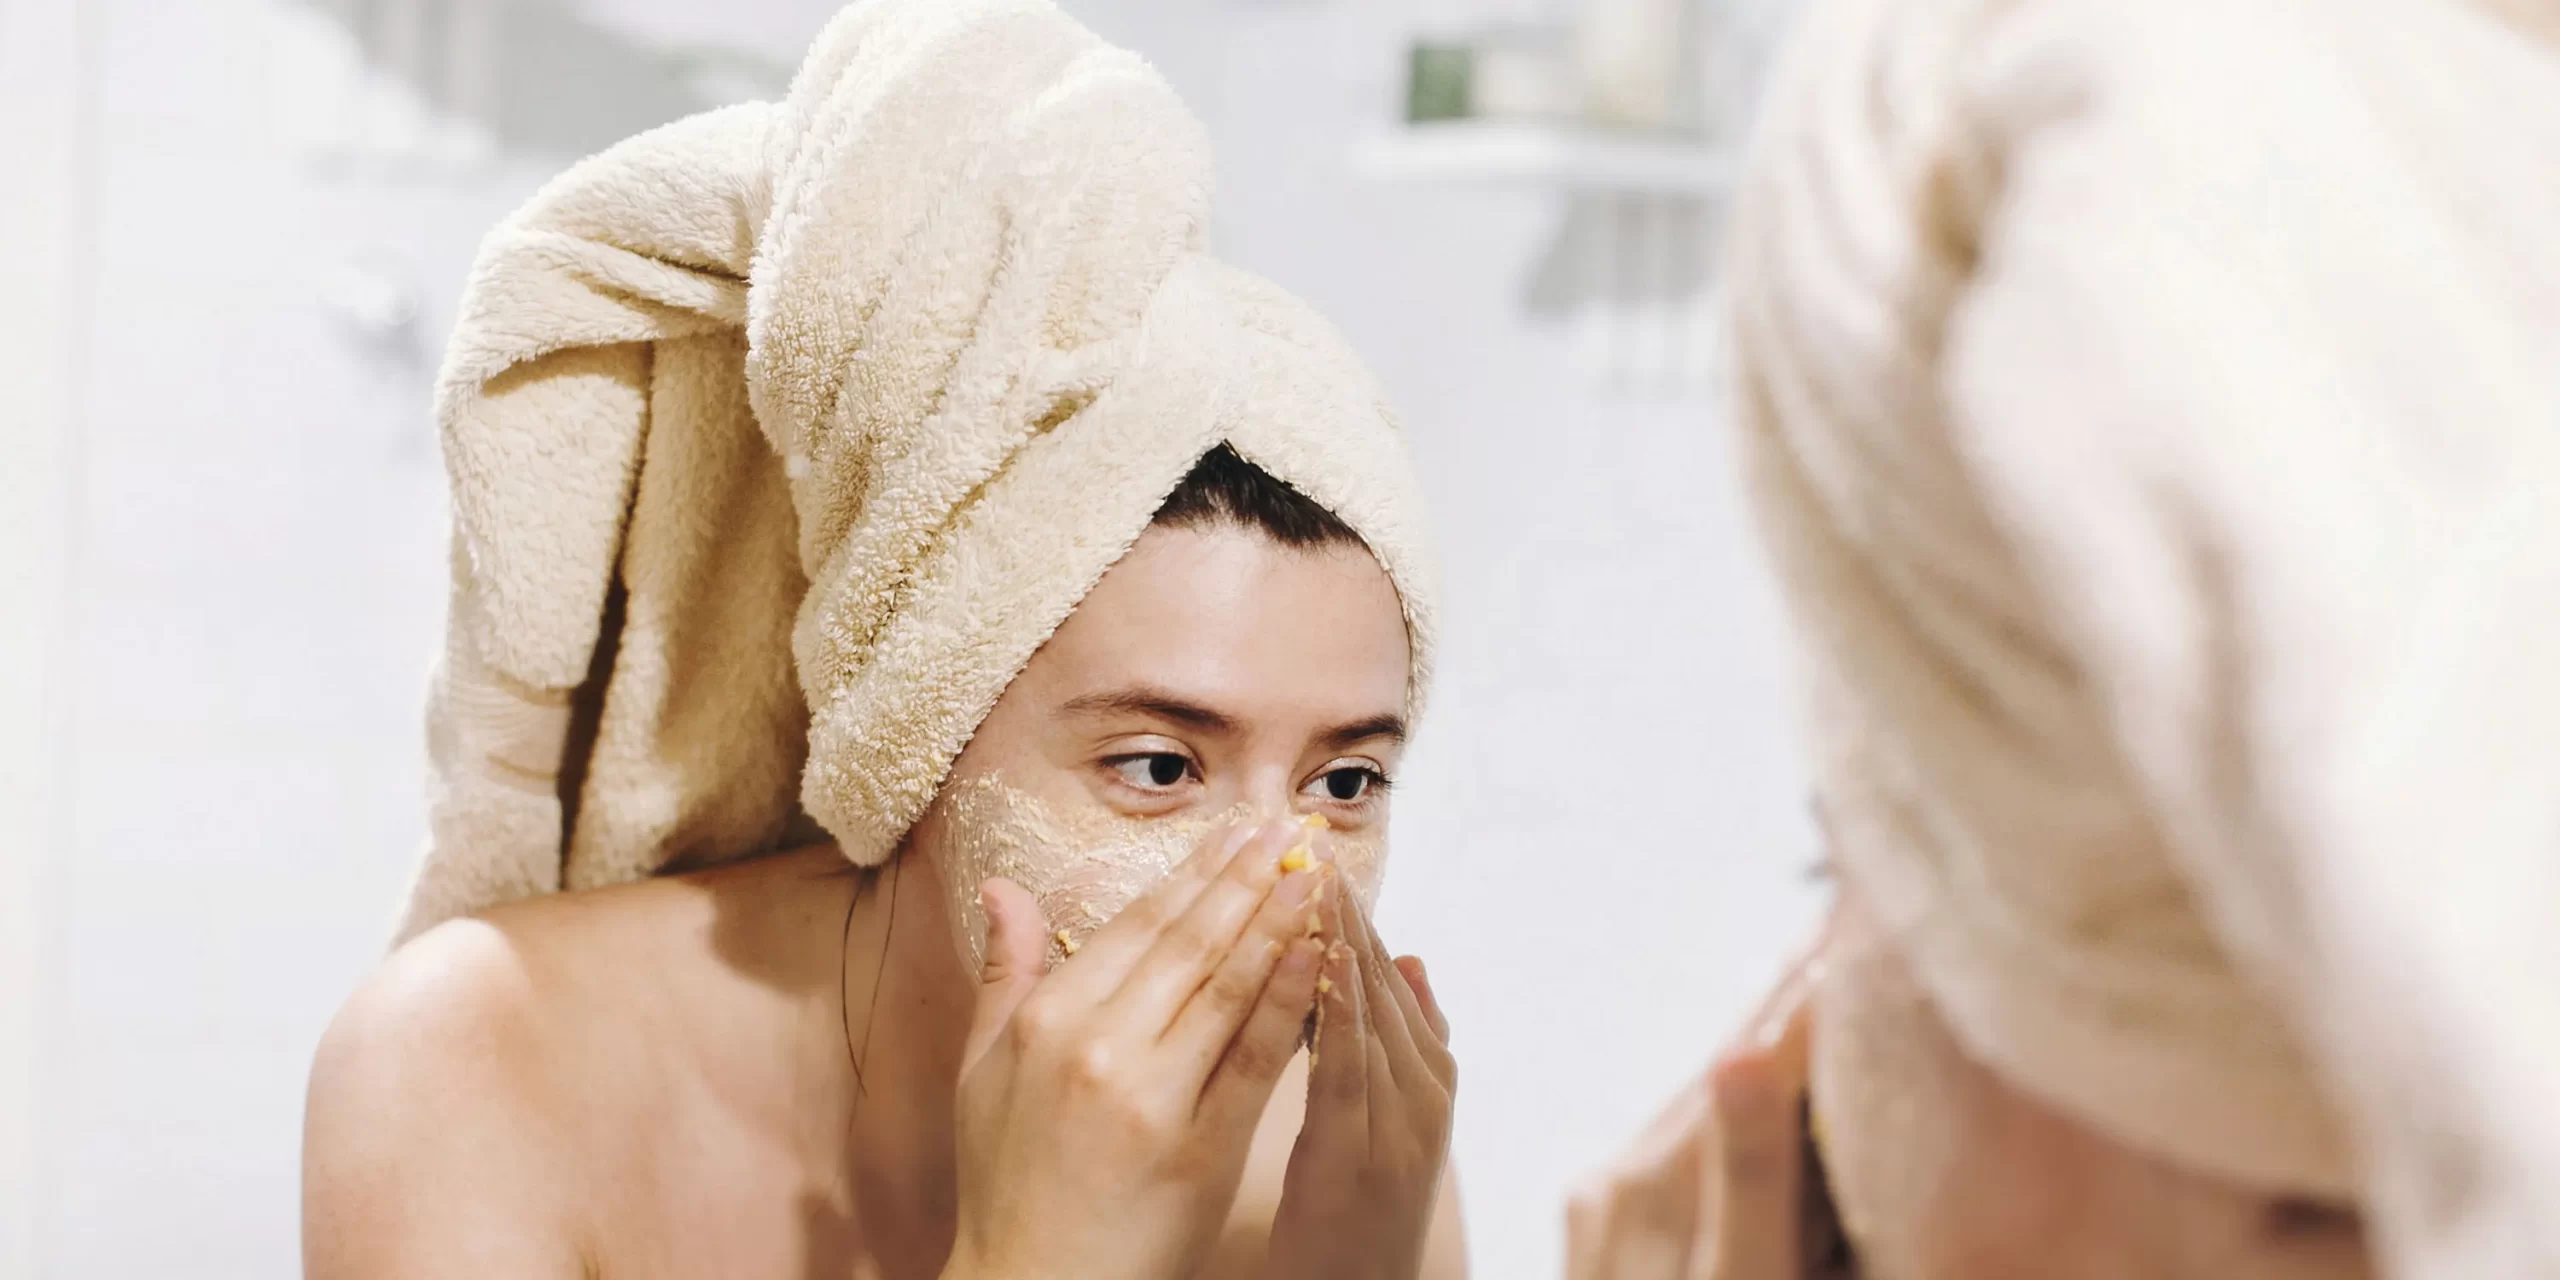 Girl using face scrub in mirror